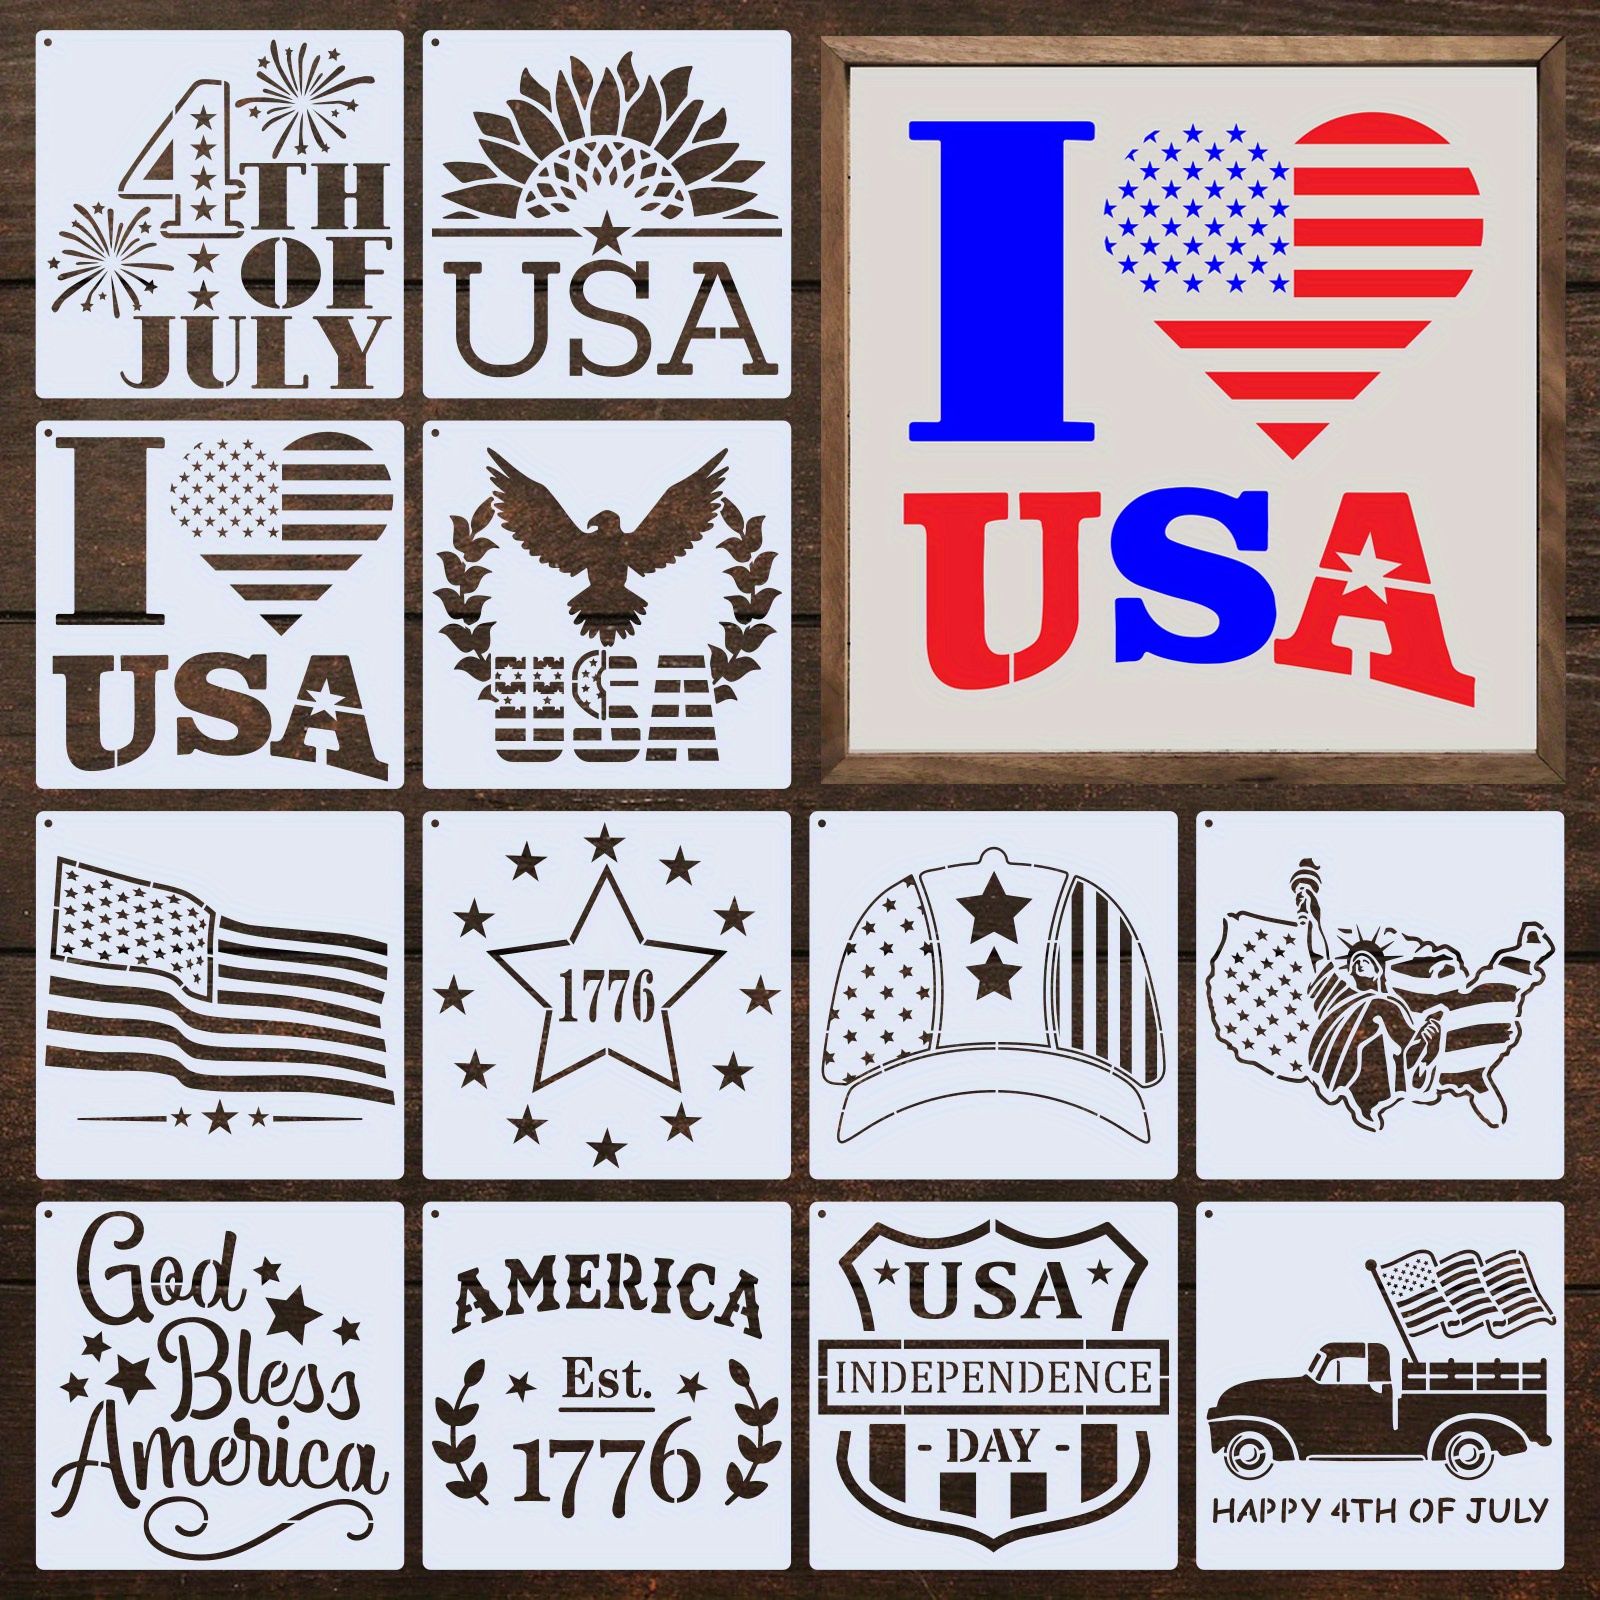  16 plantillas de feliz 4 de julio, plantilla de pintura del Día  de la Independencia, plantillas de dibujo patriótico reutilizables, incluye  mapa de bandera estadounidense, patrones de estrellas, plantilla de granja